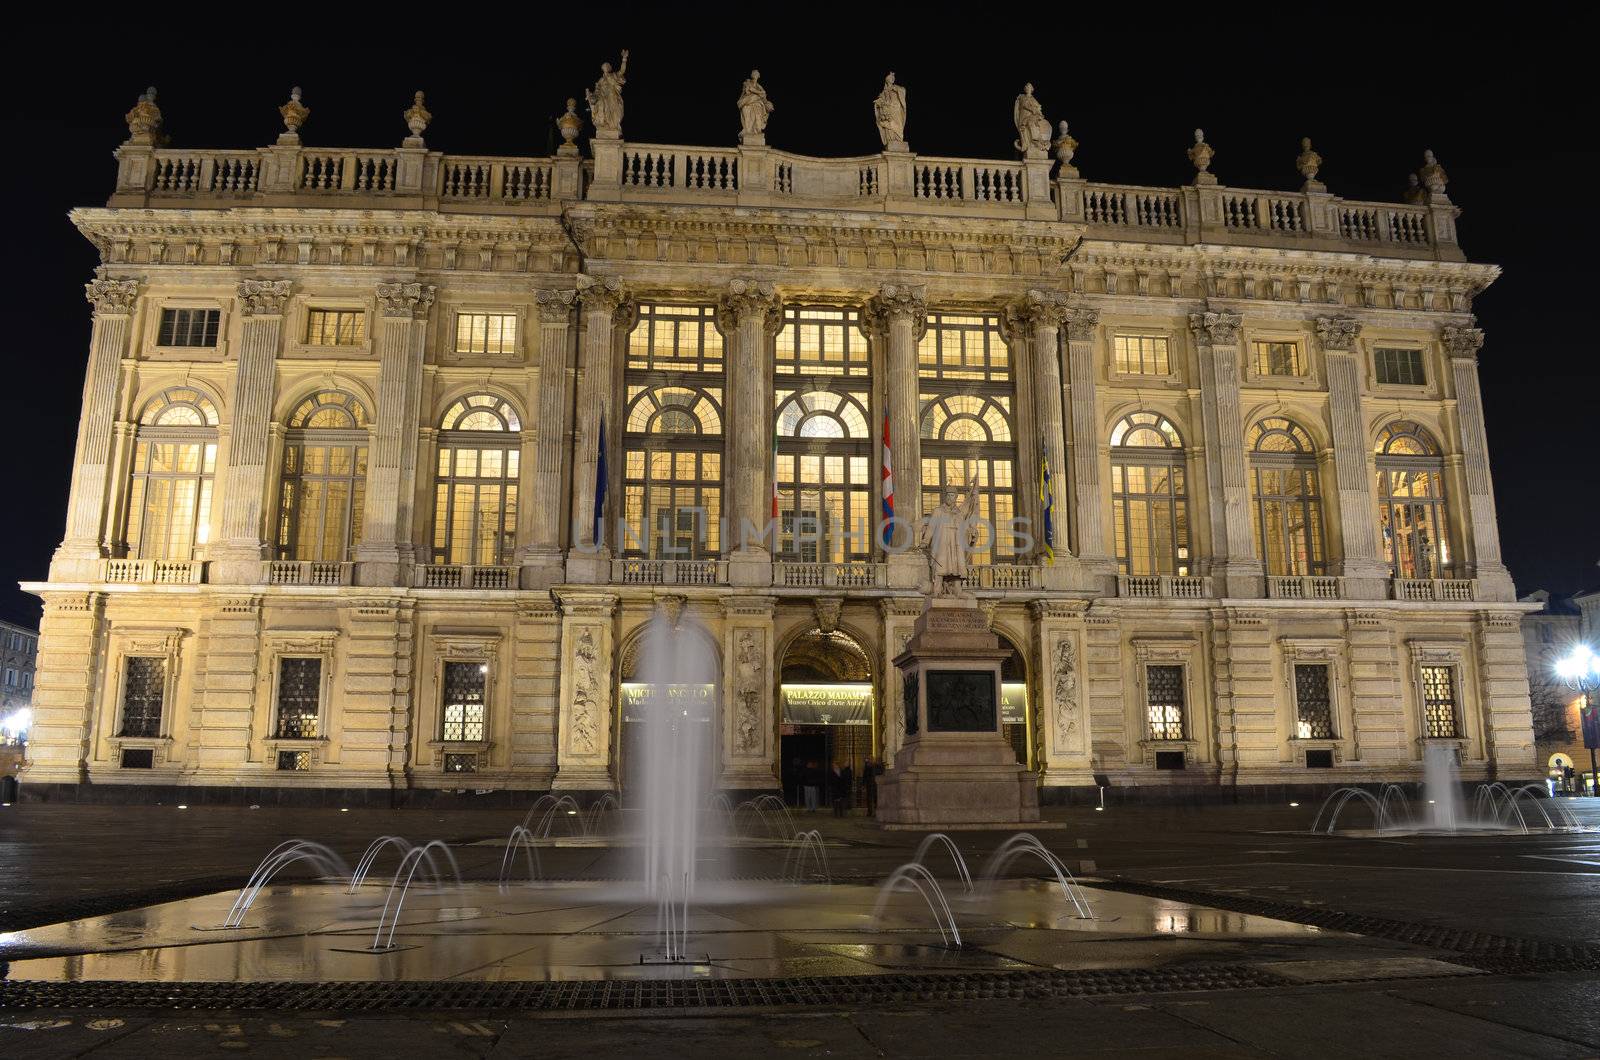 Palazzo Madama in Turin, Italy by artofphoto